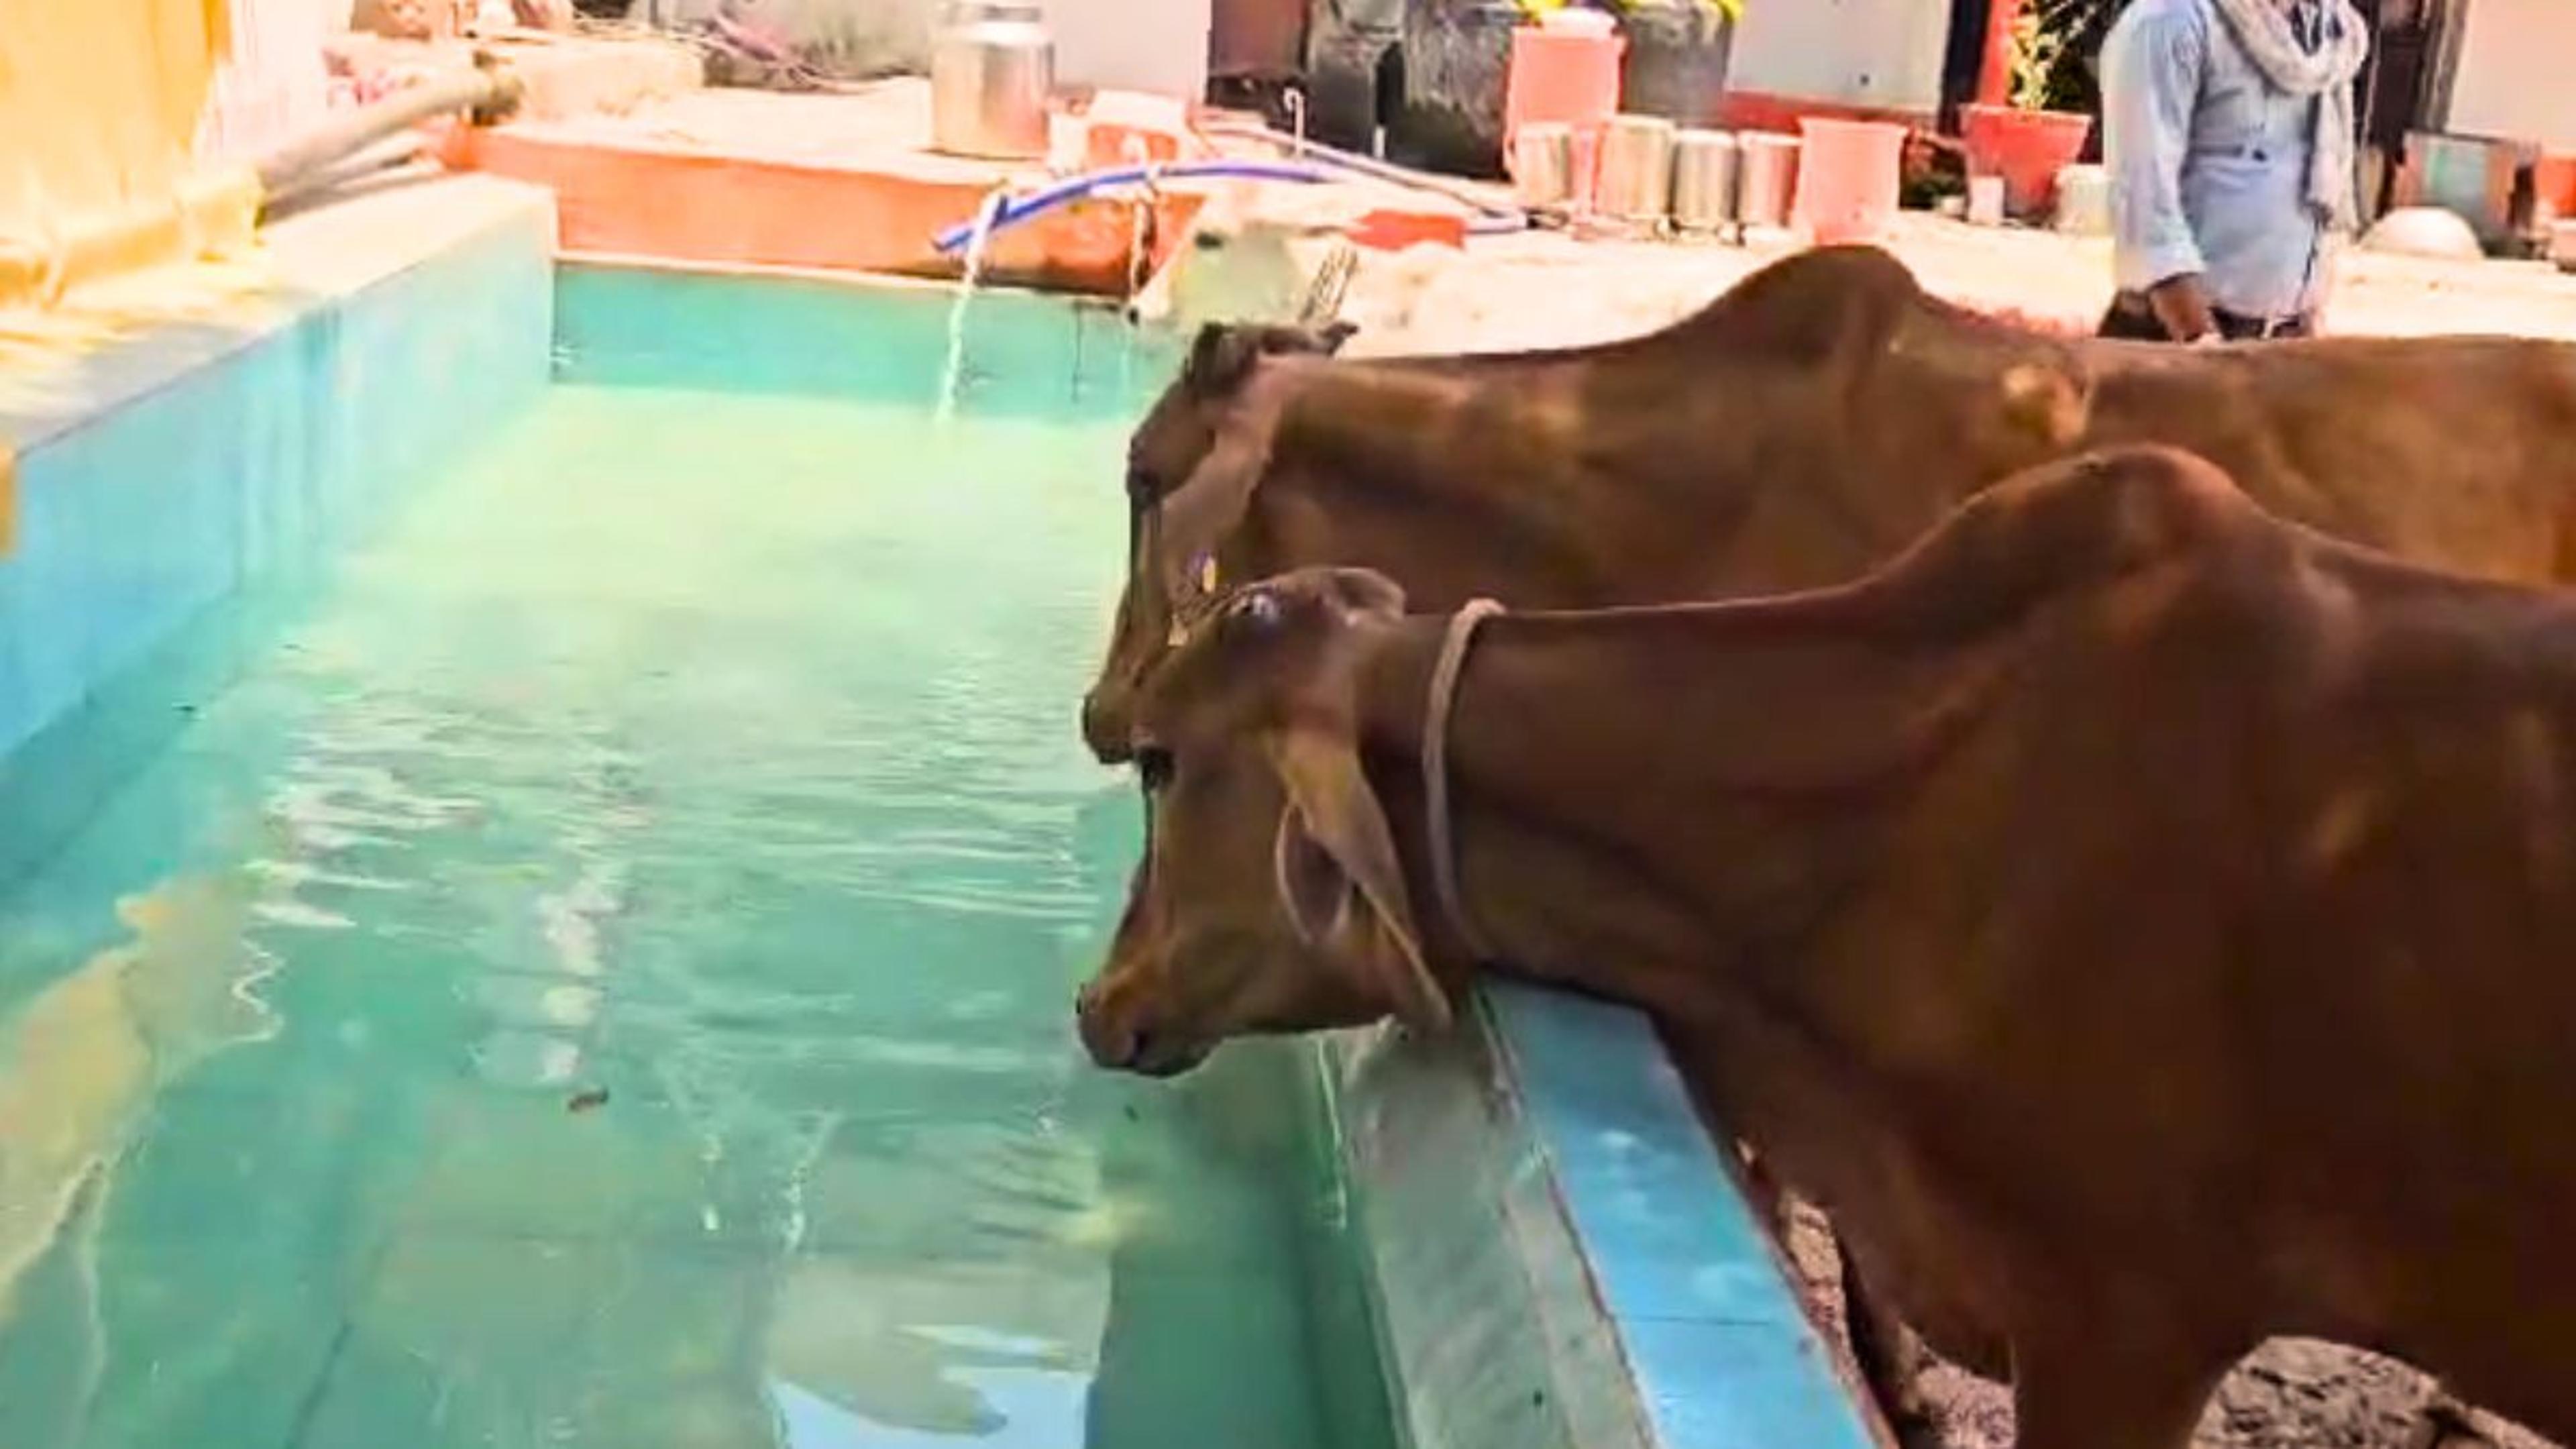 Khandwa News : ये गौशाला कुछ खास है! यहां गायों को पिलाई जा रही स्पेशल हाइड्रेटड
ड्रिंक, देंखे VIDEO